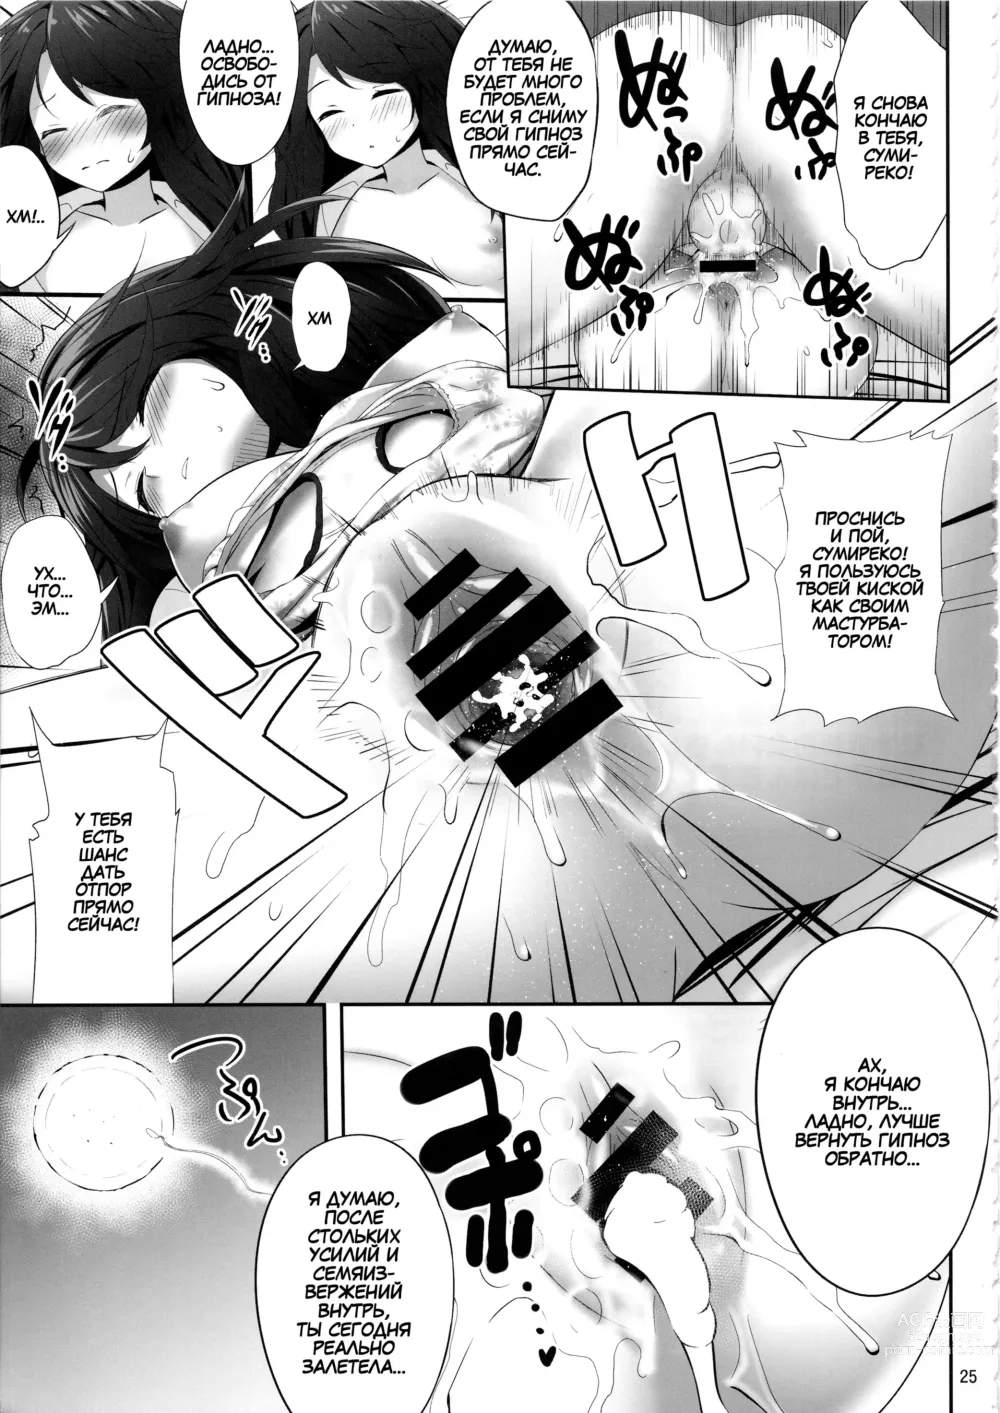 Page 24 of doujinshi Usami Sumireko Saiminbon 2